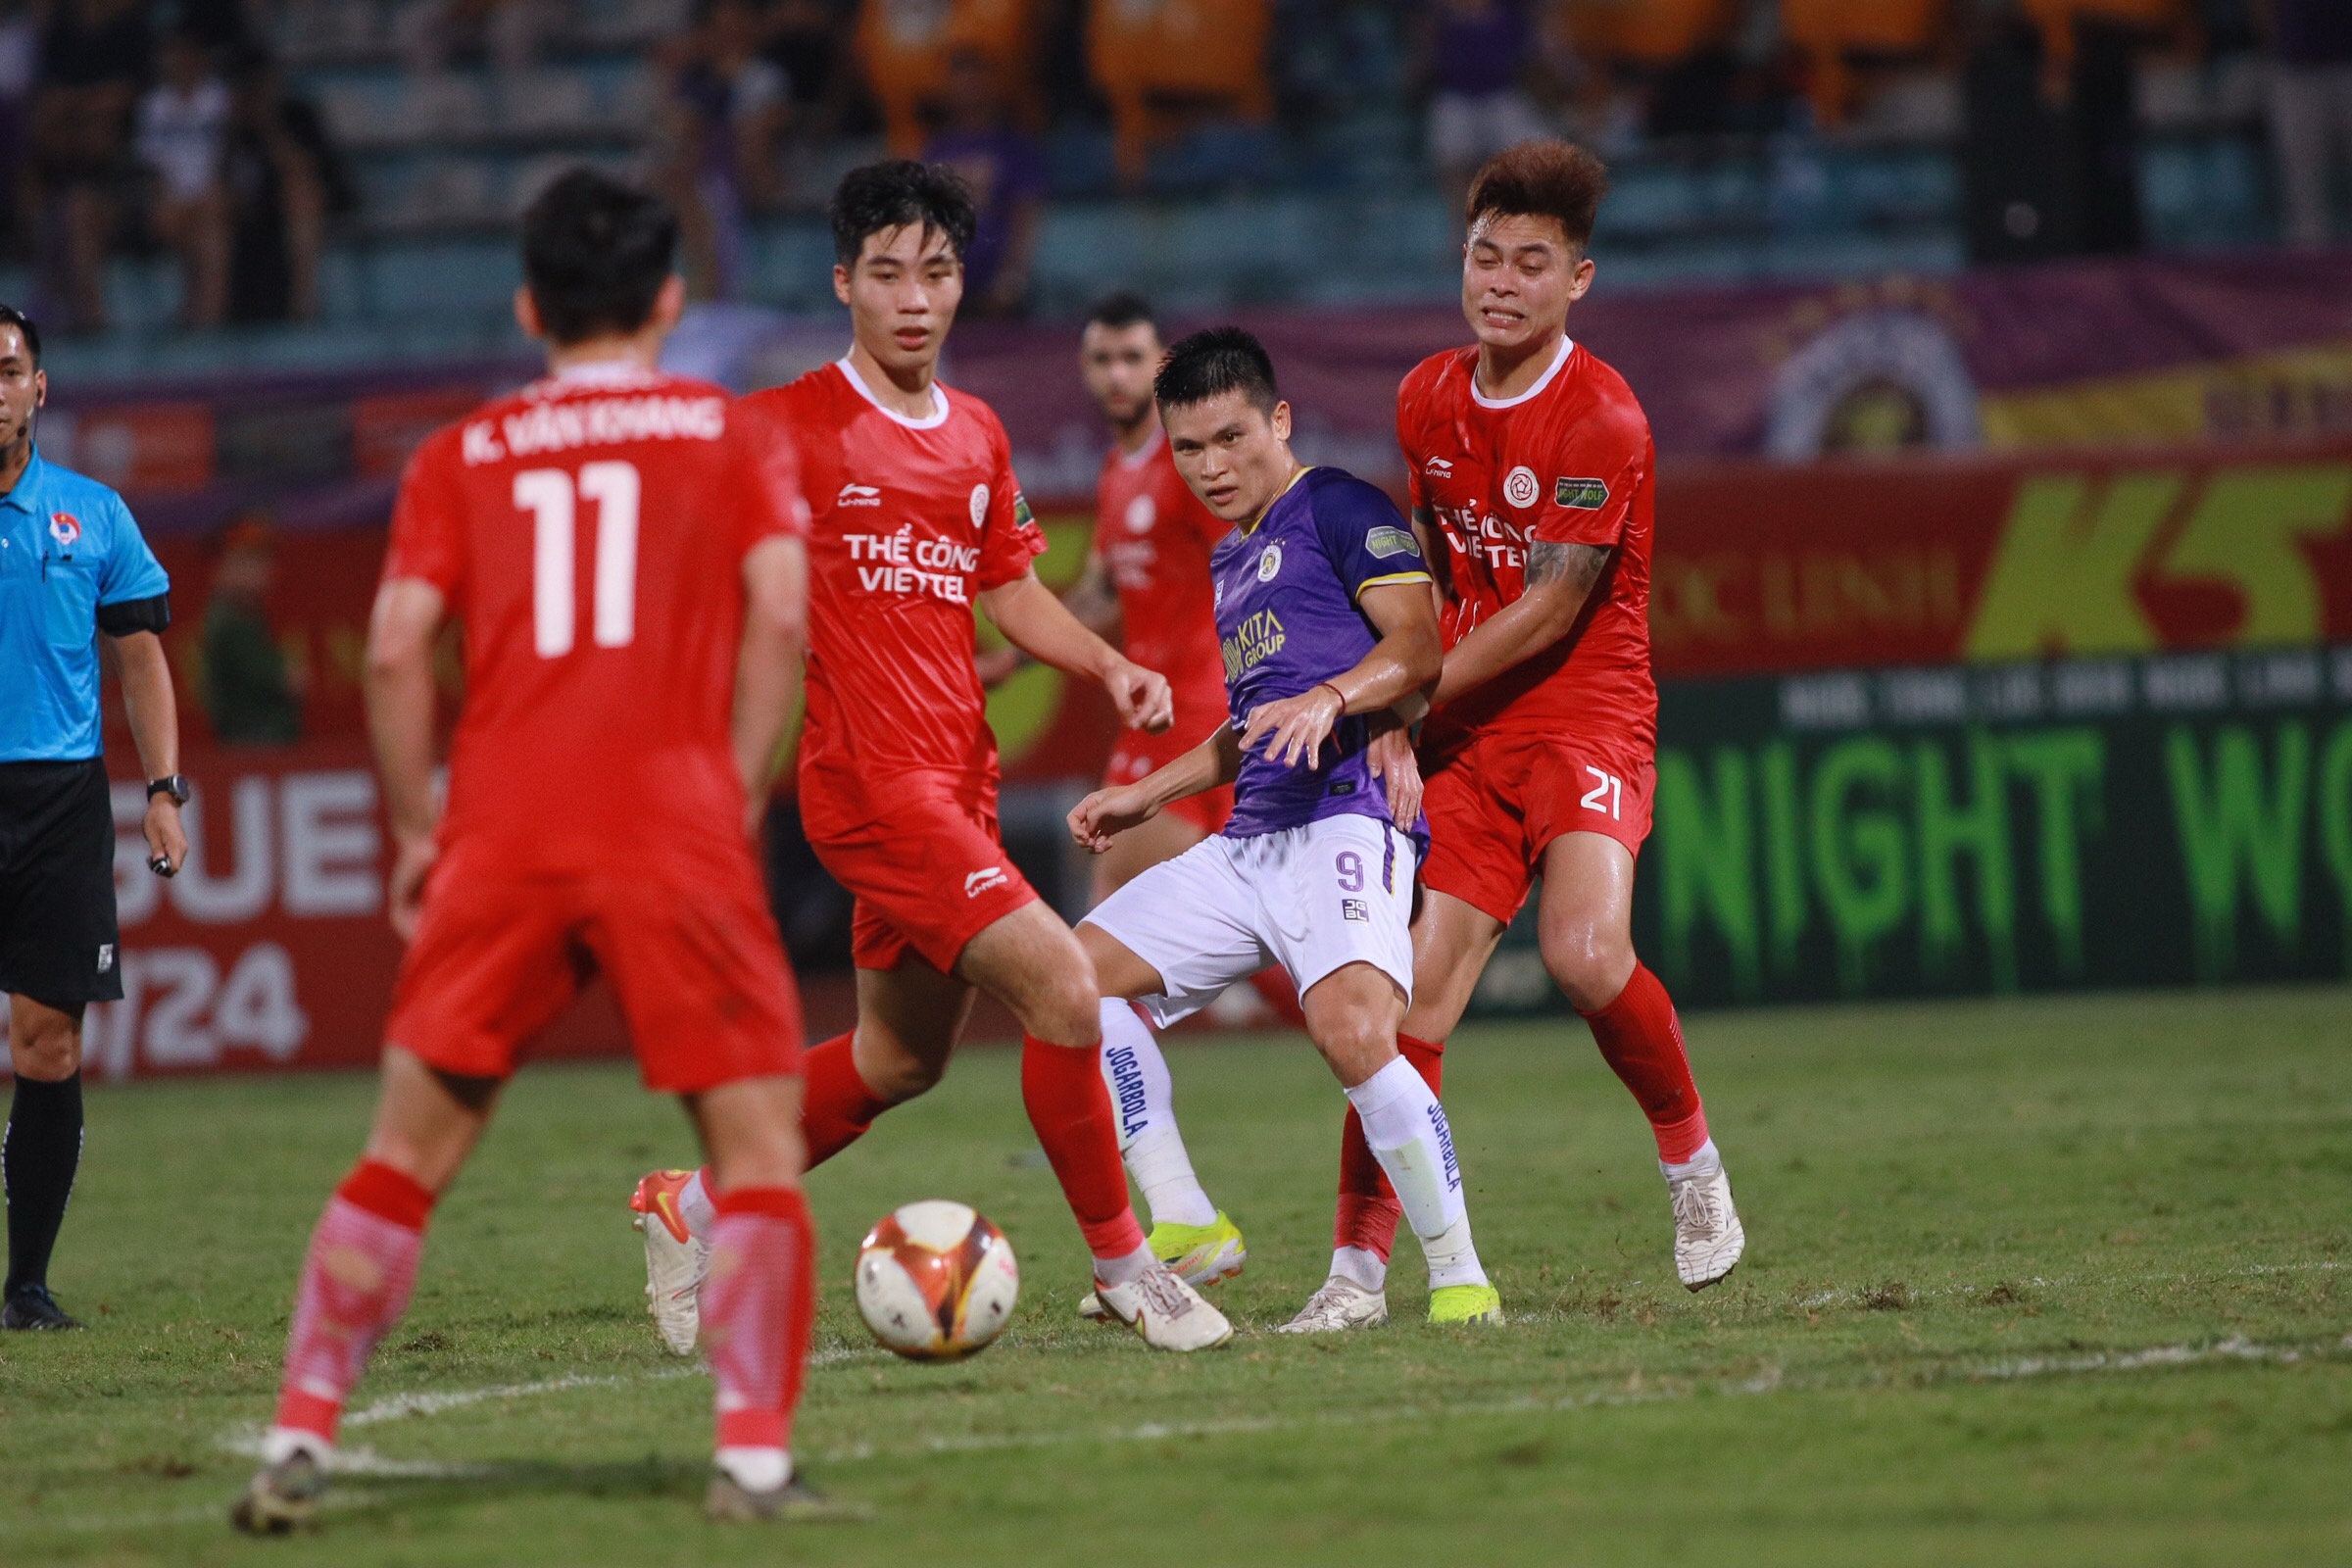 HLV Kim Sang-sik xuống sân bắt tay các cầu thủ Hà Nội FC và Thể Công Viettel- Ảnh 10.